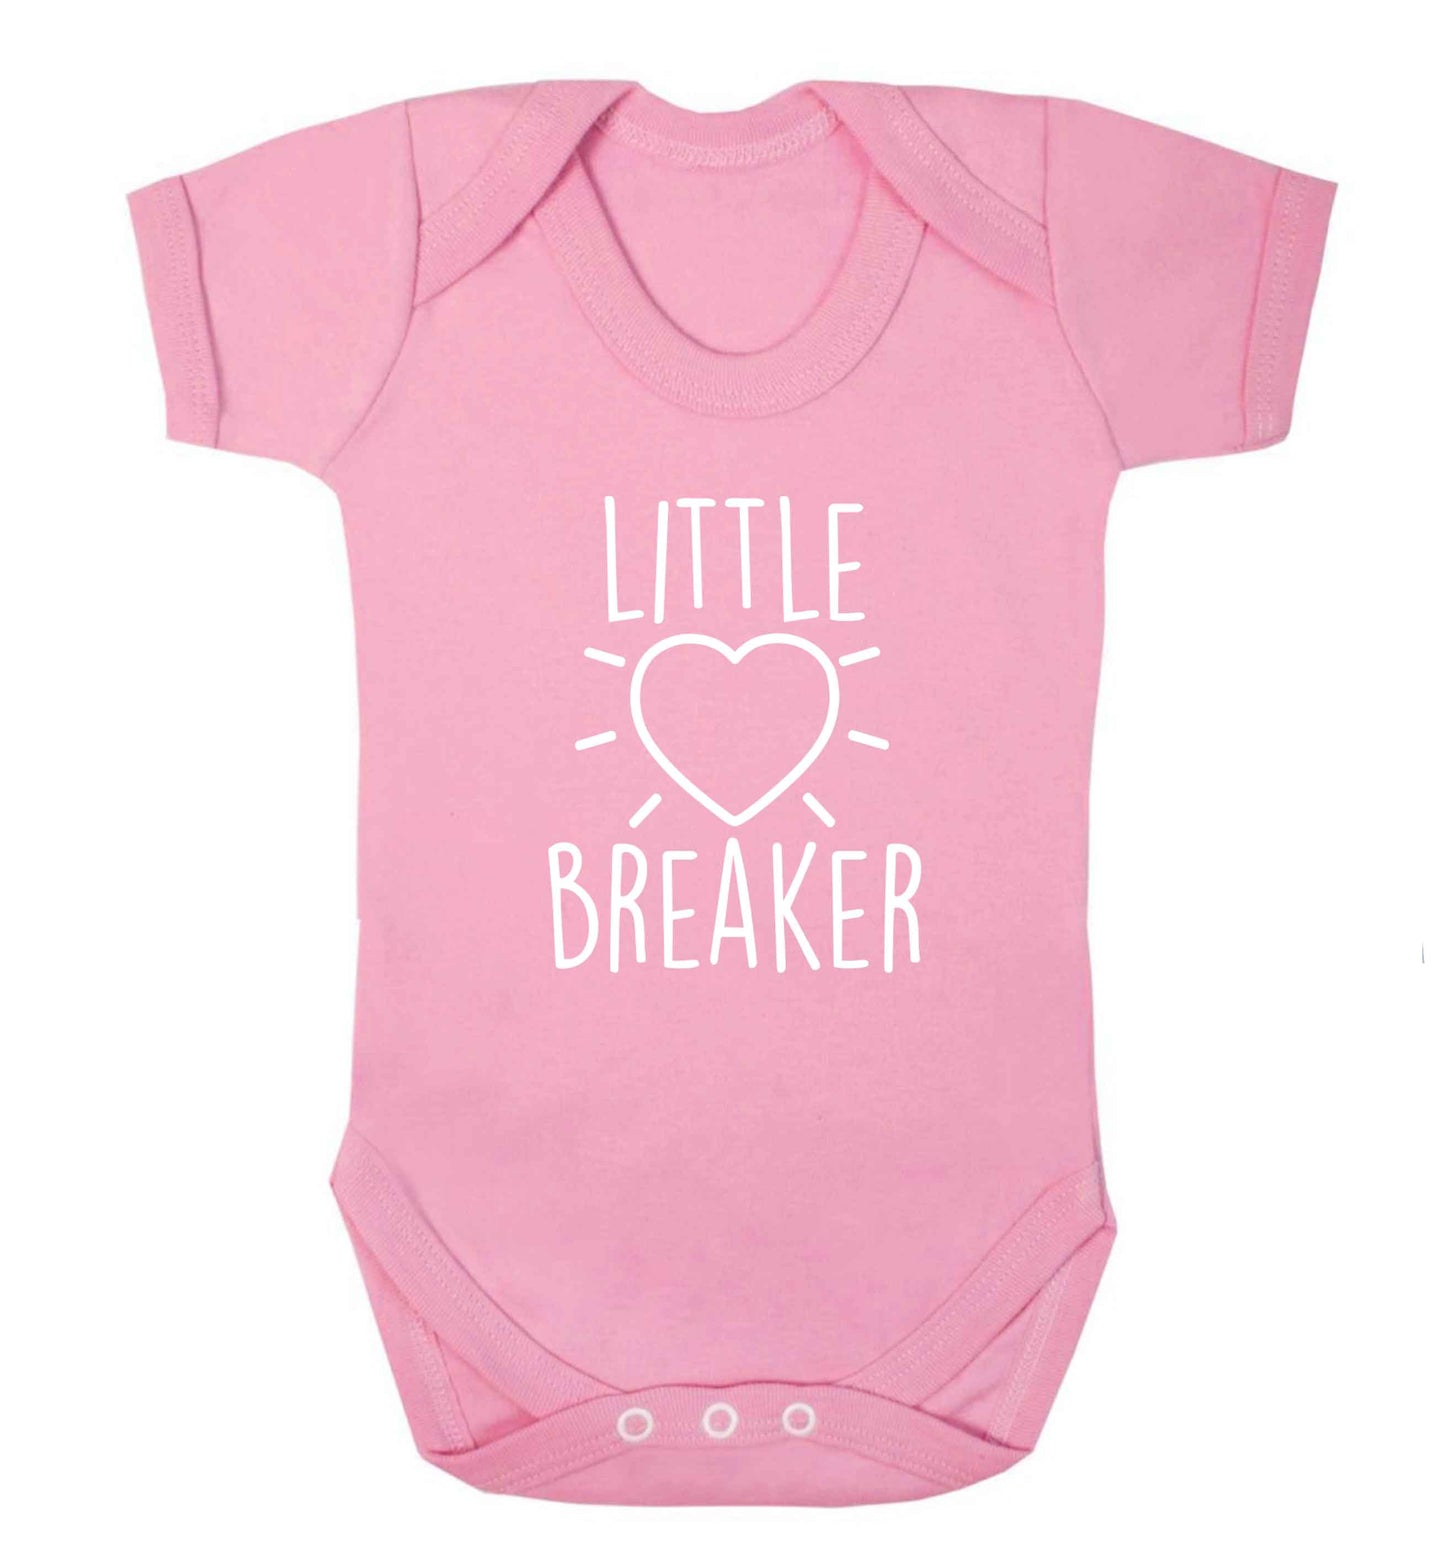 Little heartbreaker baby vest pale pink 18-24 months